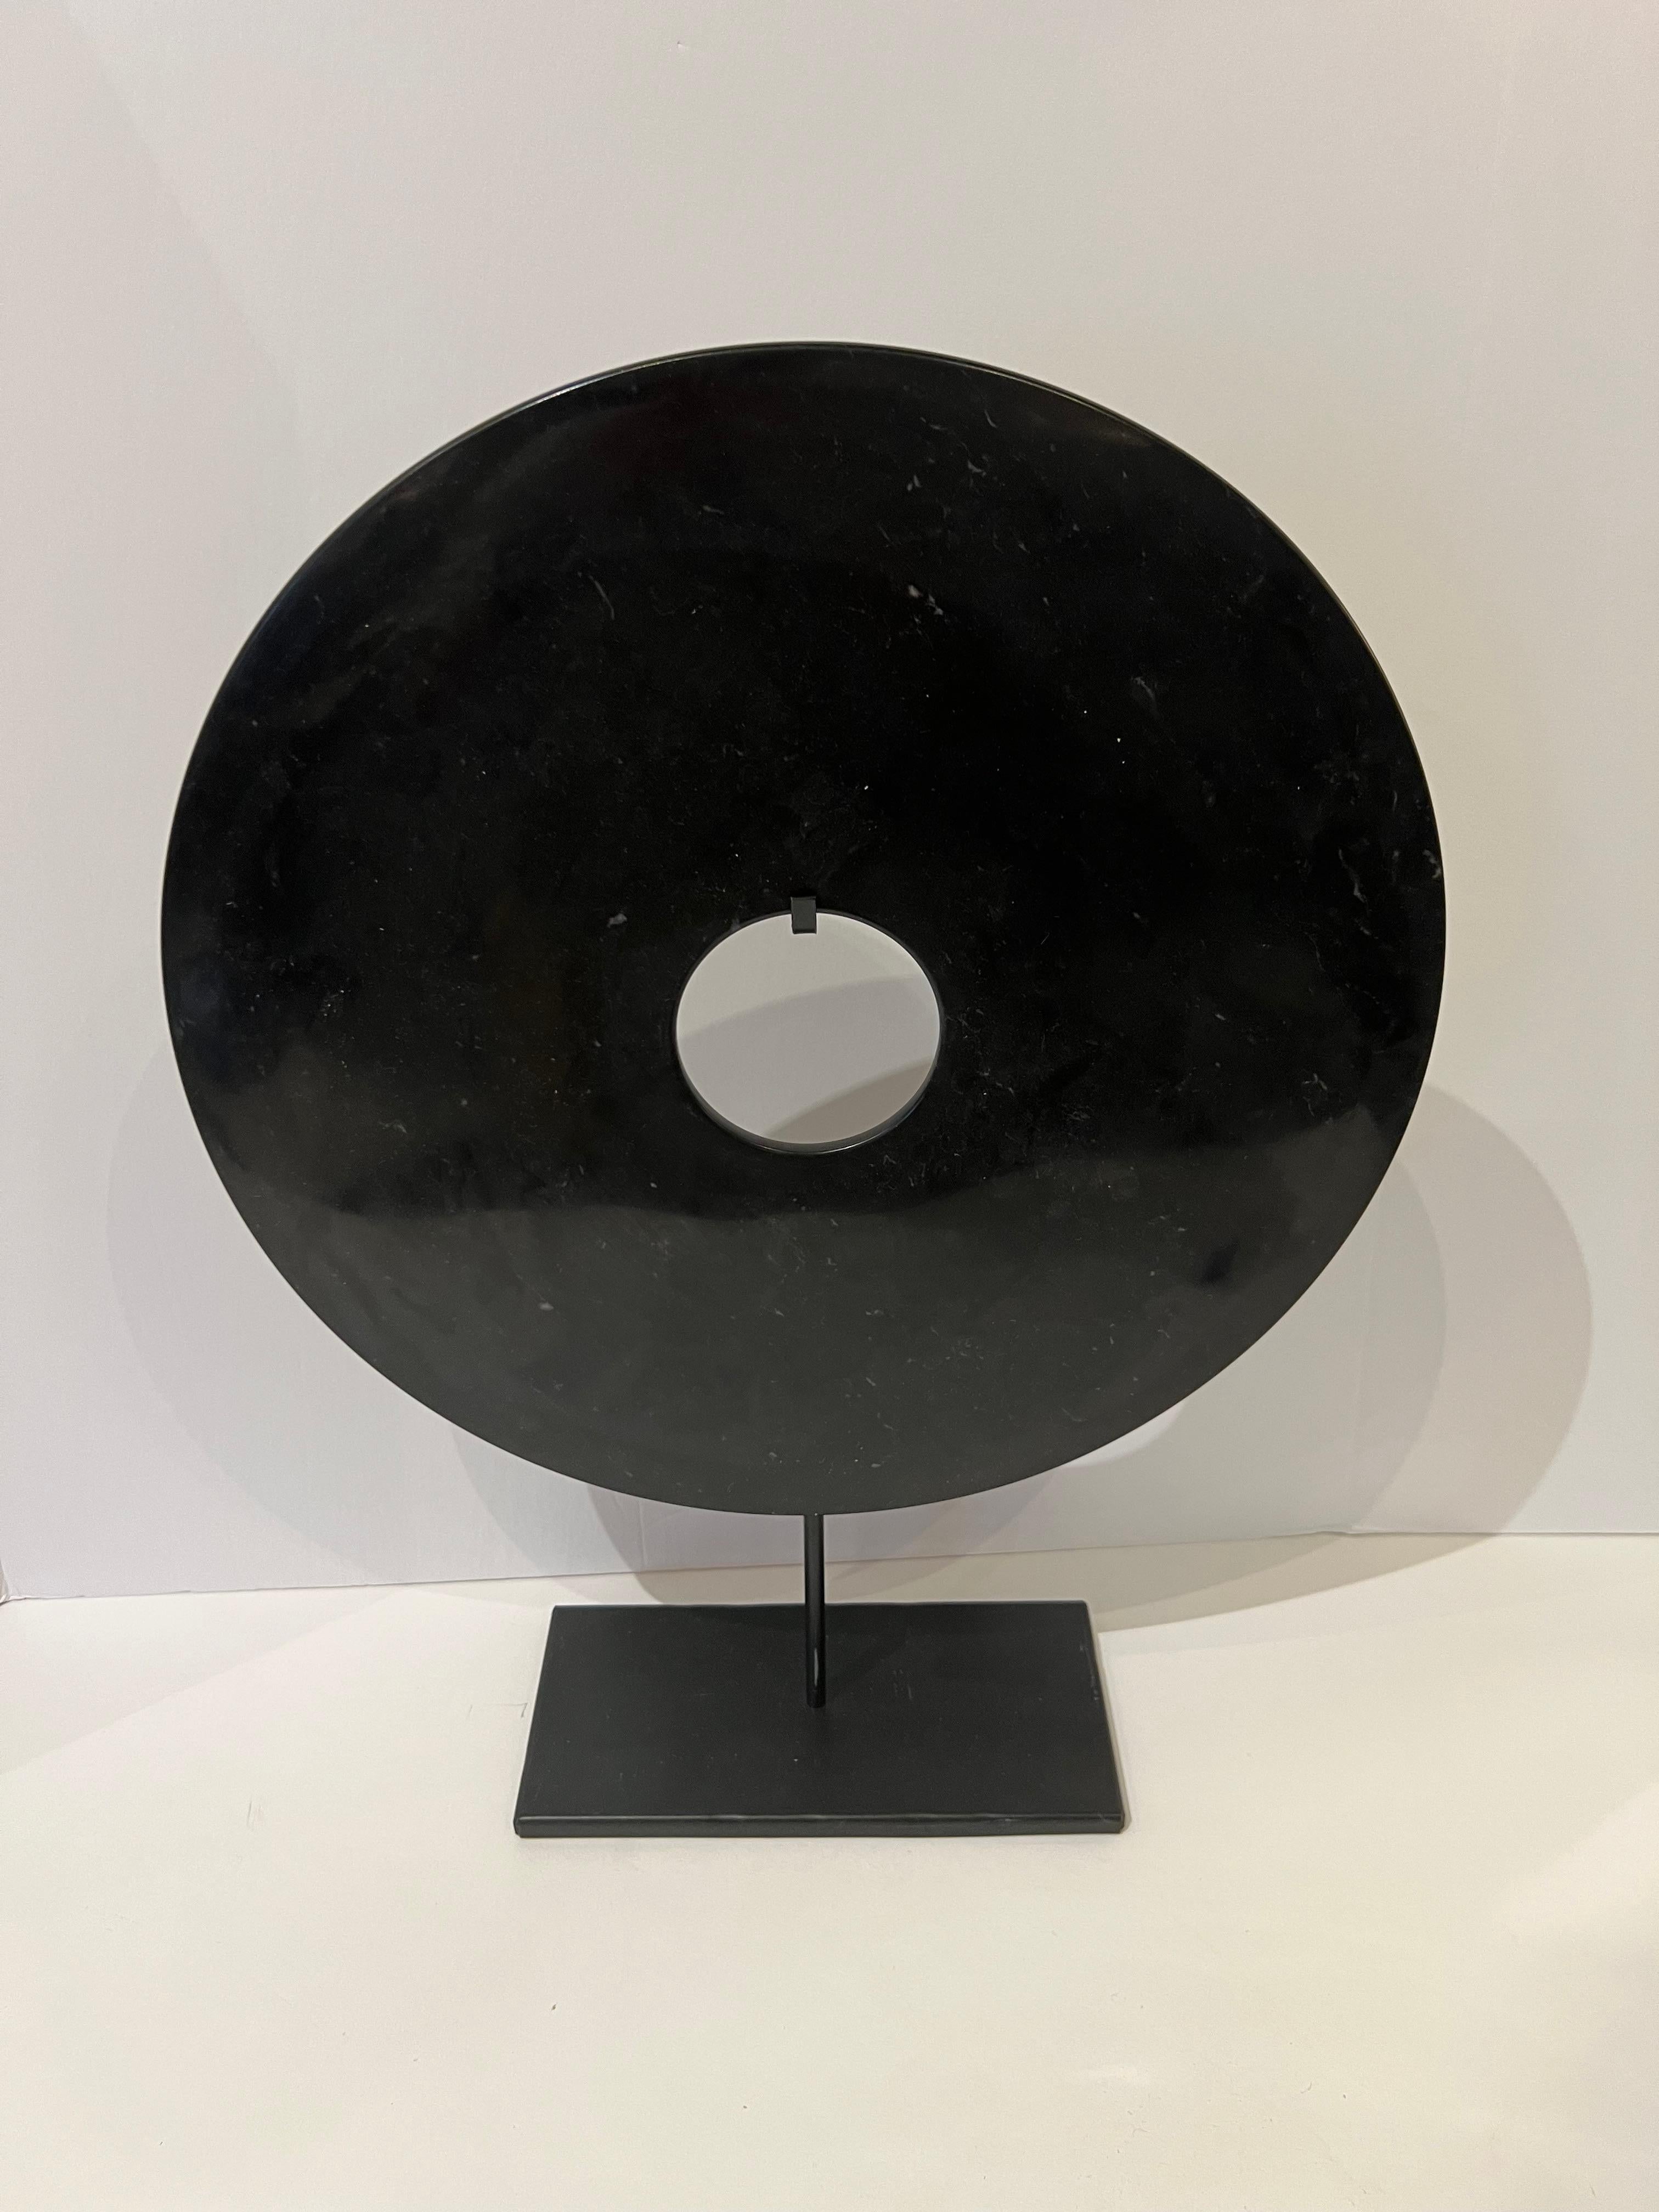 Sculpture chinoise contemporaine de grande taille en forme de disque en jade noir lisse sur socle en métal.
Egalement disponible en blanc ( S6451 )
Mesures du stand  9